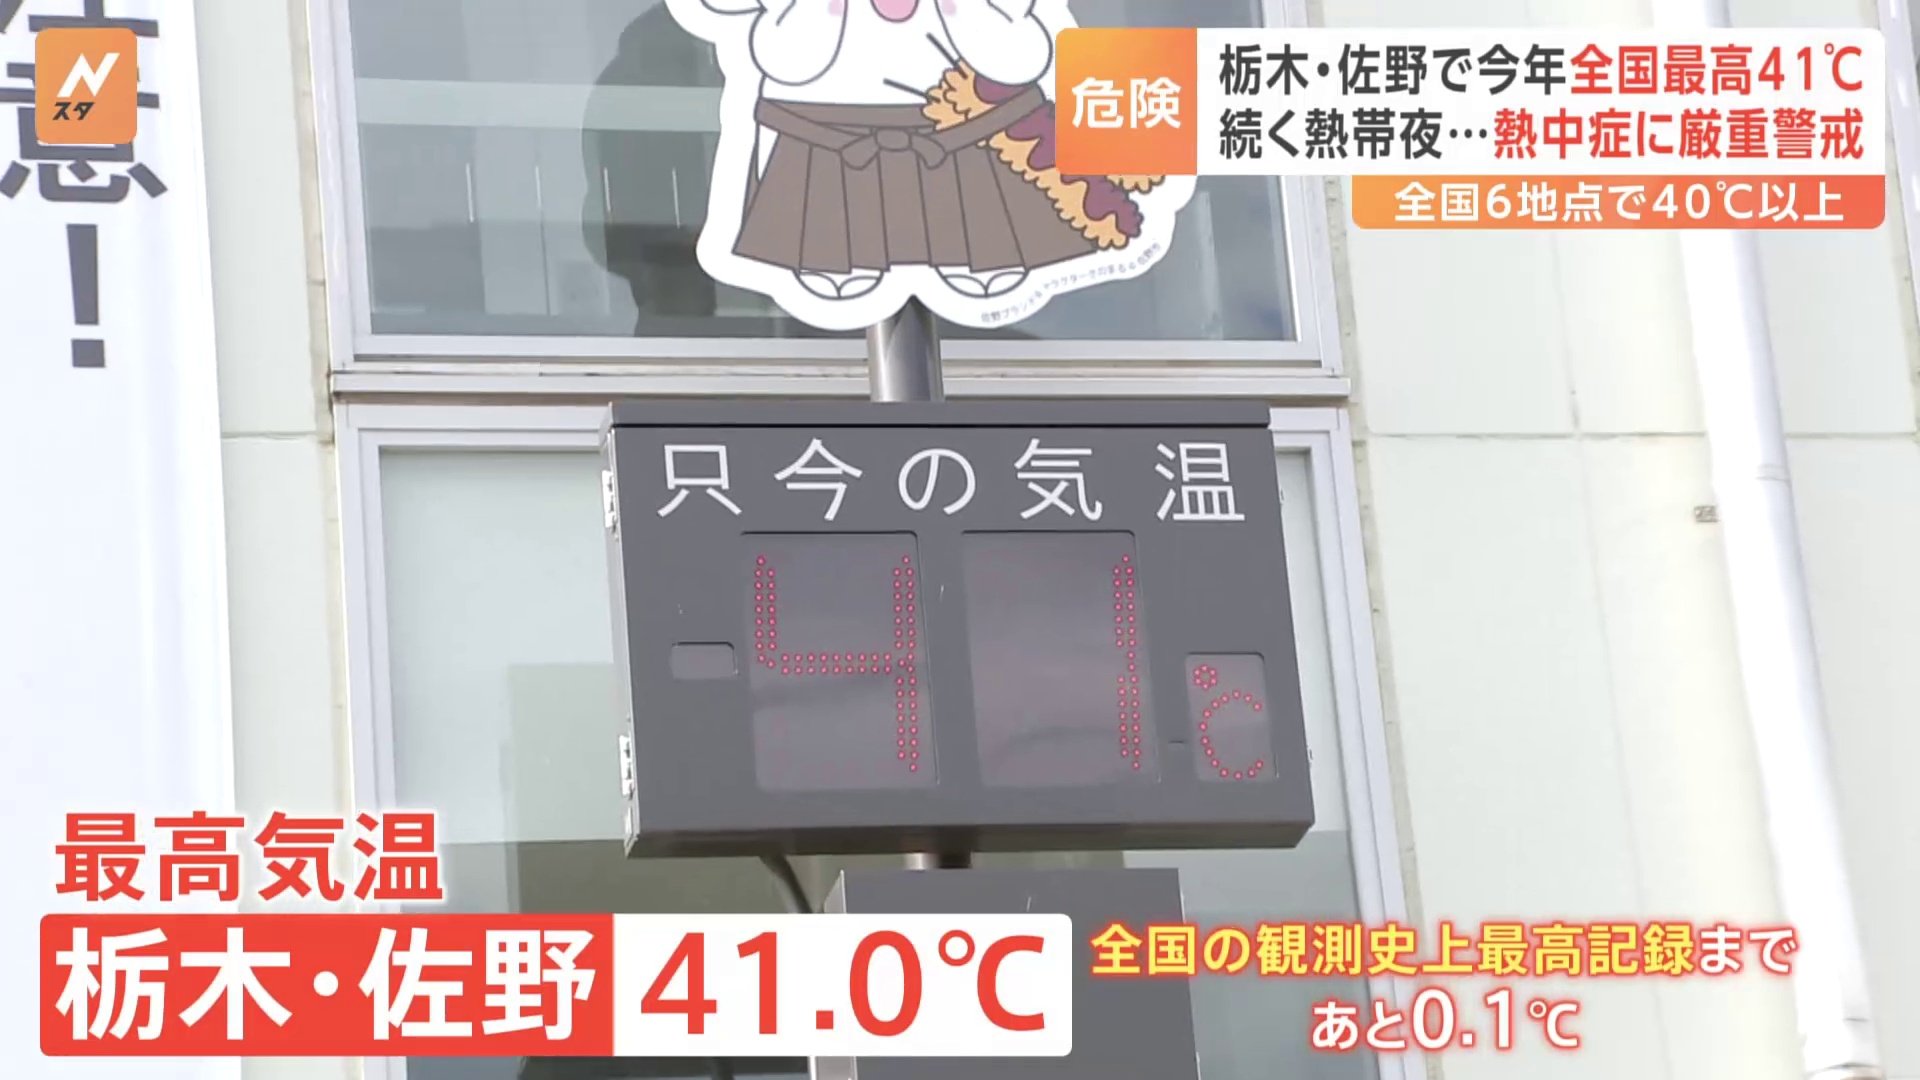 「暑いを超えて痛い…」国内最高気温に迫る41.0℃…災害級の暑さに栃木・佐野市民からは悲鳴